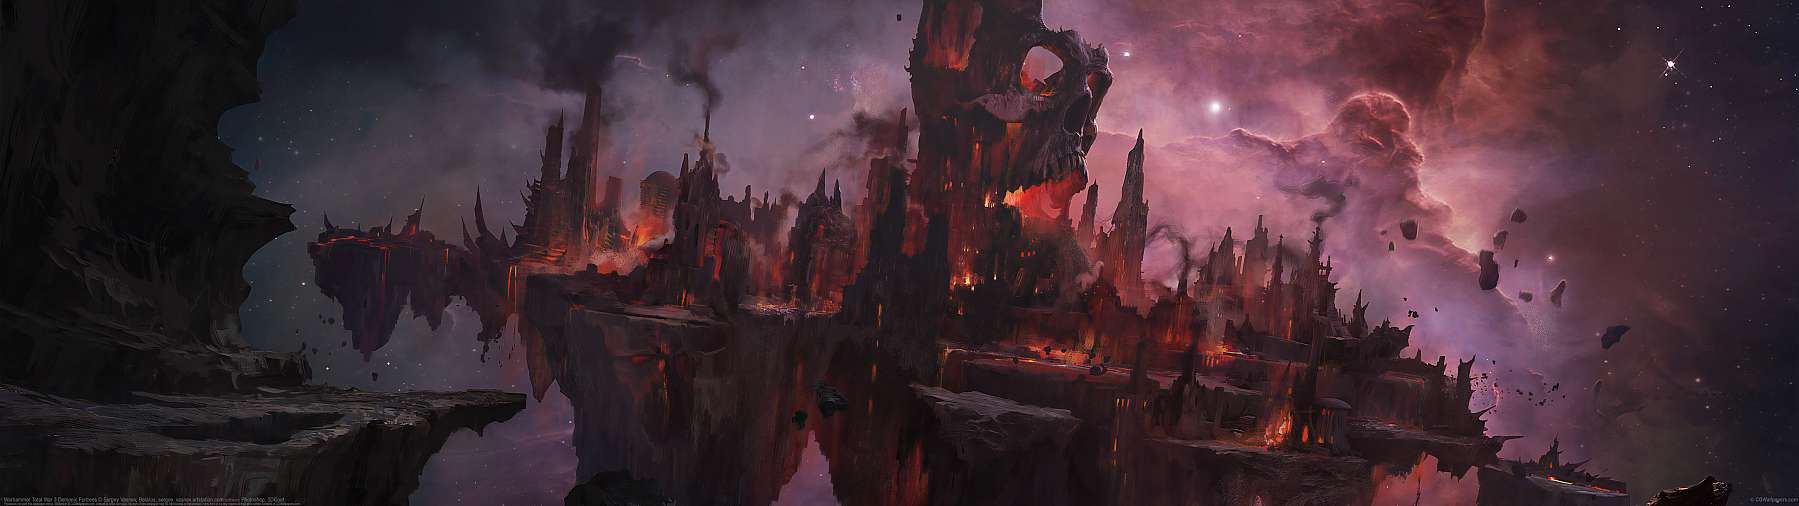 Warhammer Total War 3 Demonic Fortress ultrawide wallpaper